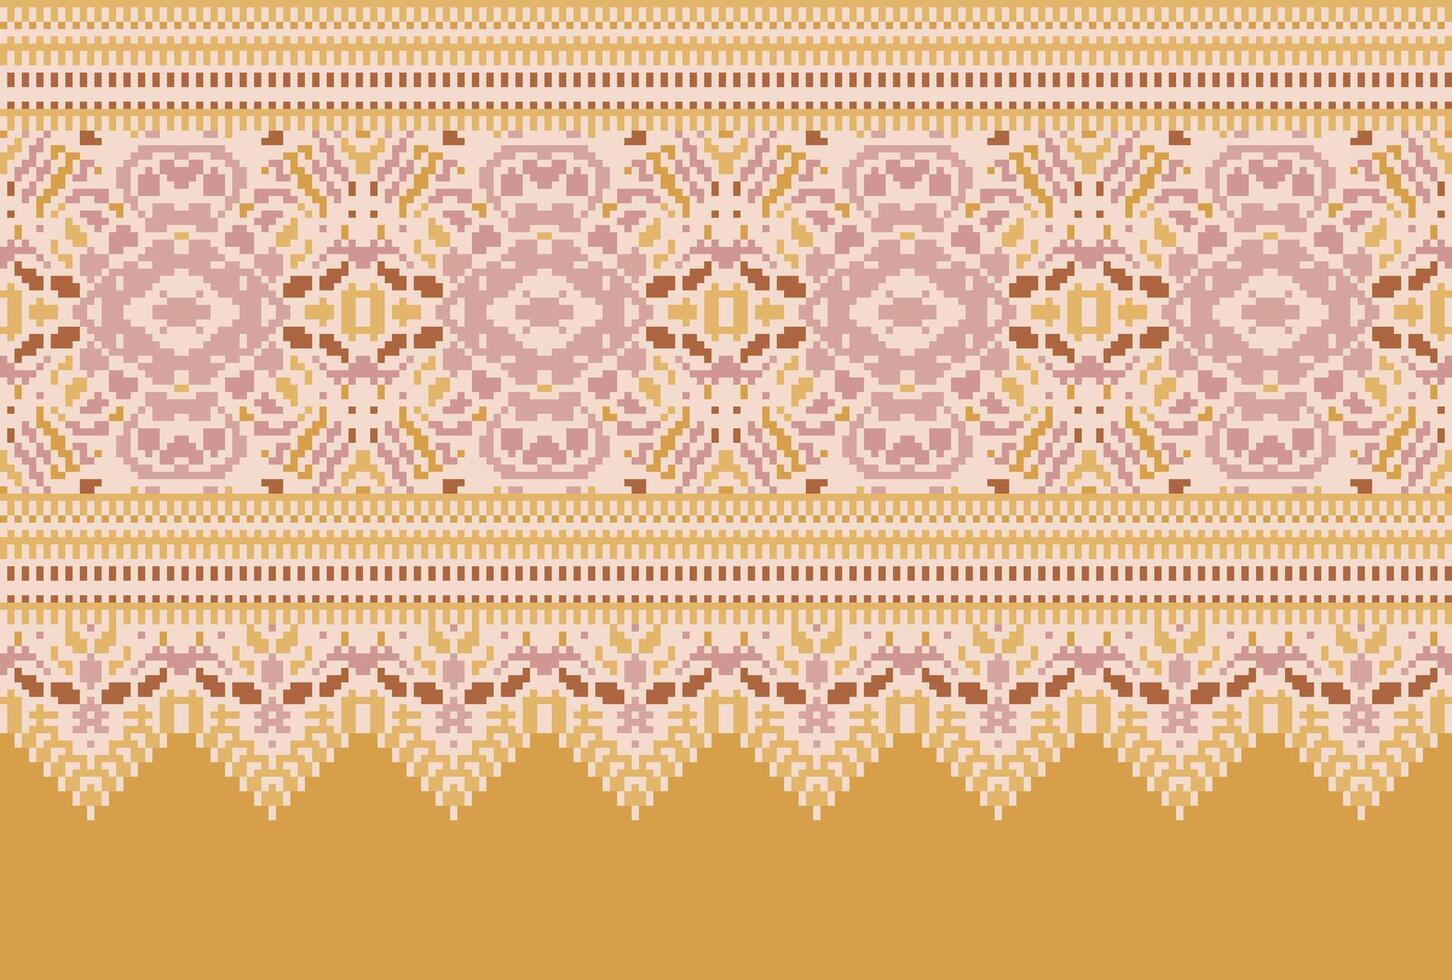 Kreuz Stich traditionell ethnisch Muster Paisley Blume Ikat Hintergrund abstrakt aztekisch afrikanisch indonesisch indisch nahtlos Muster zum Stoff drucken Stoff Kleid Teppich Vorhänge und Sarong vektor